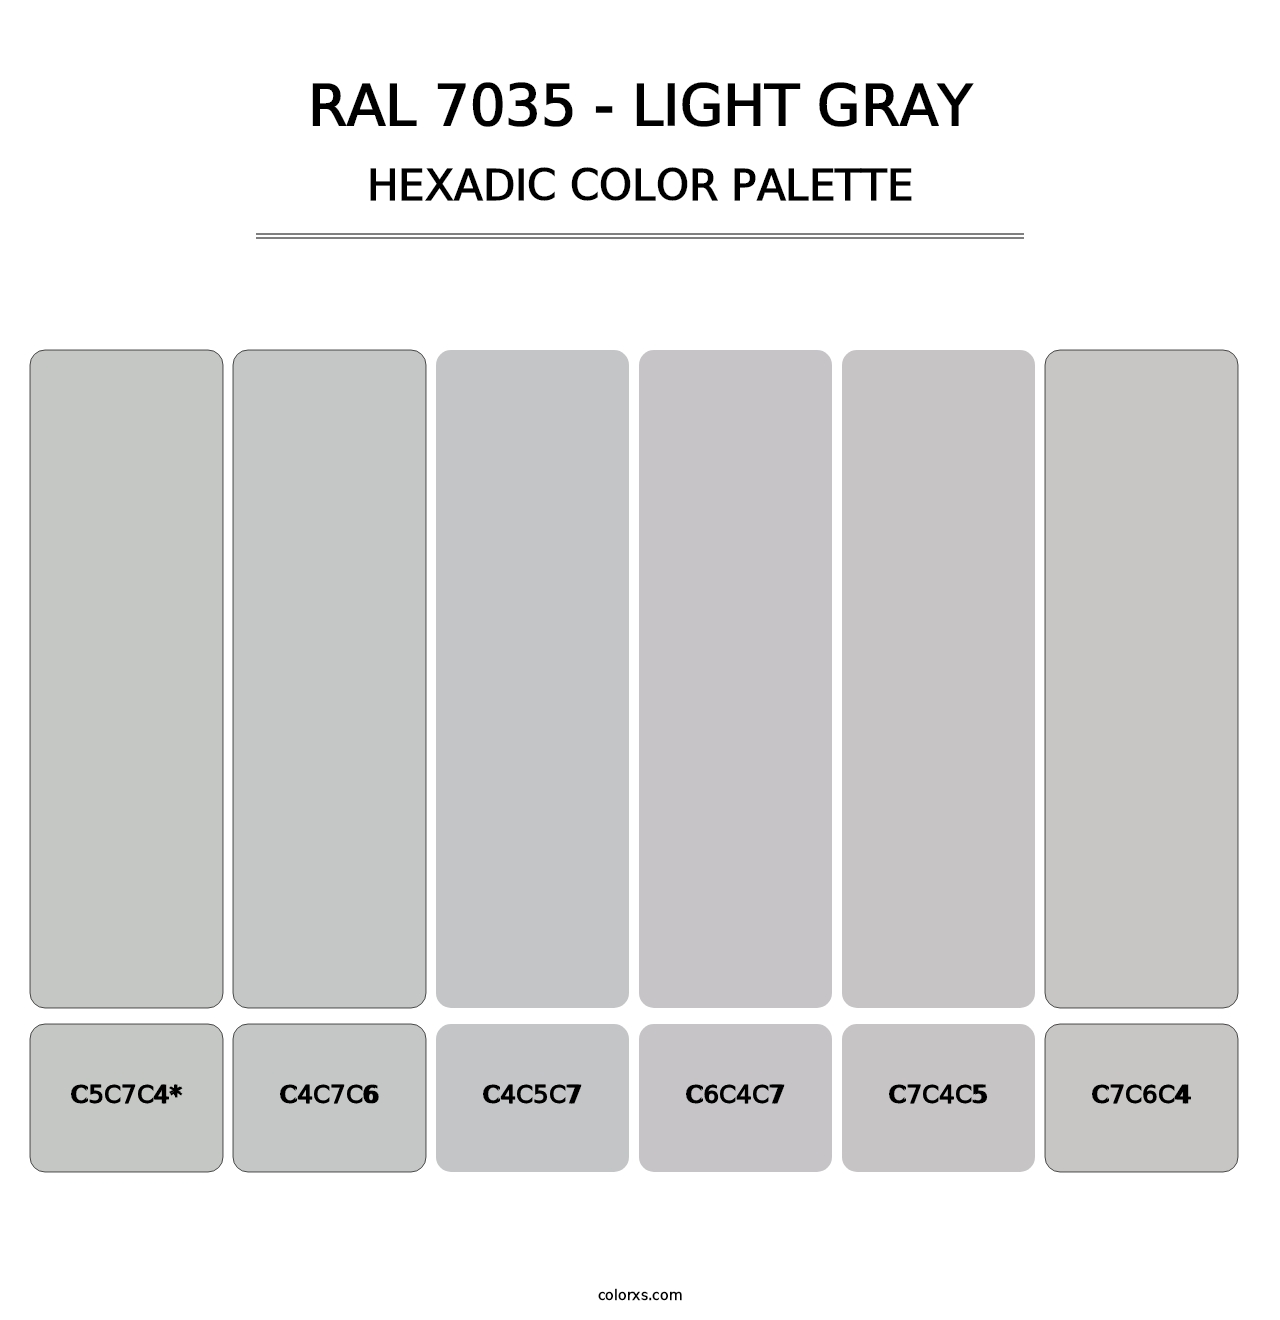 RAL 7035 - Light Gray - Hexadic Color Palette